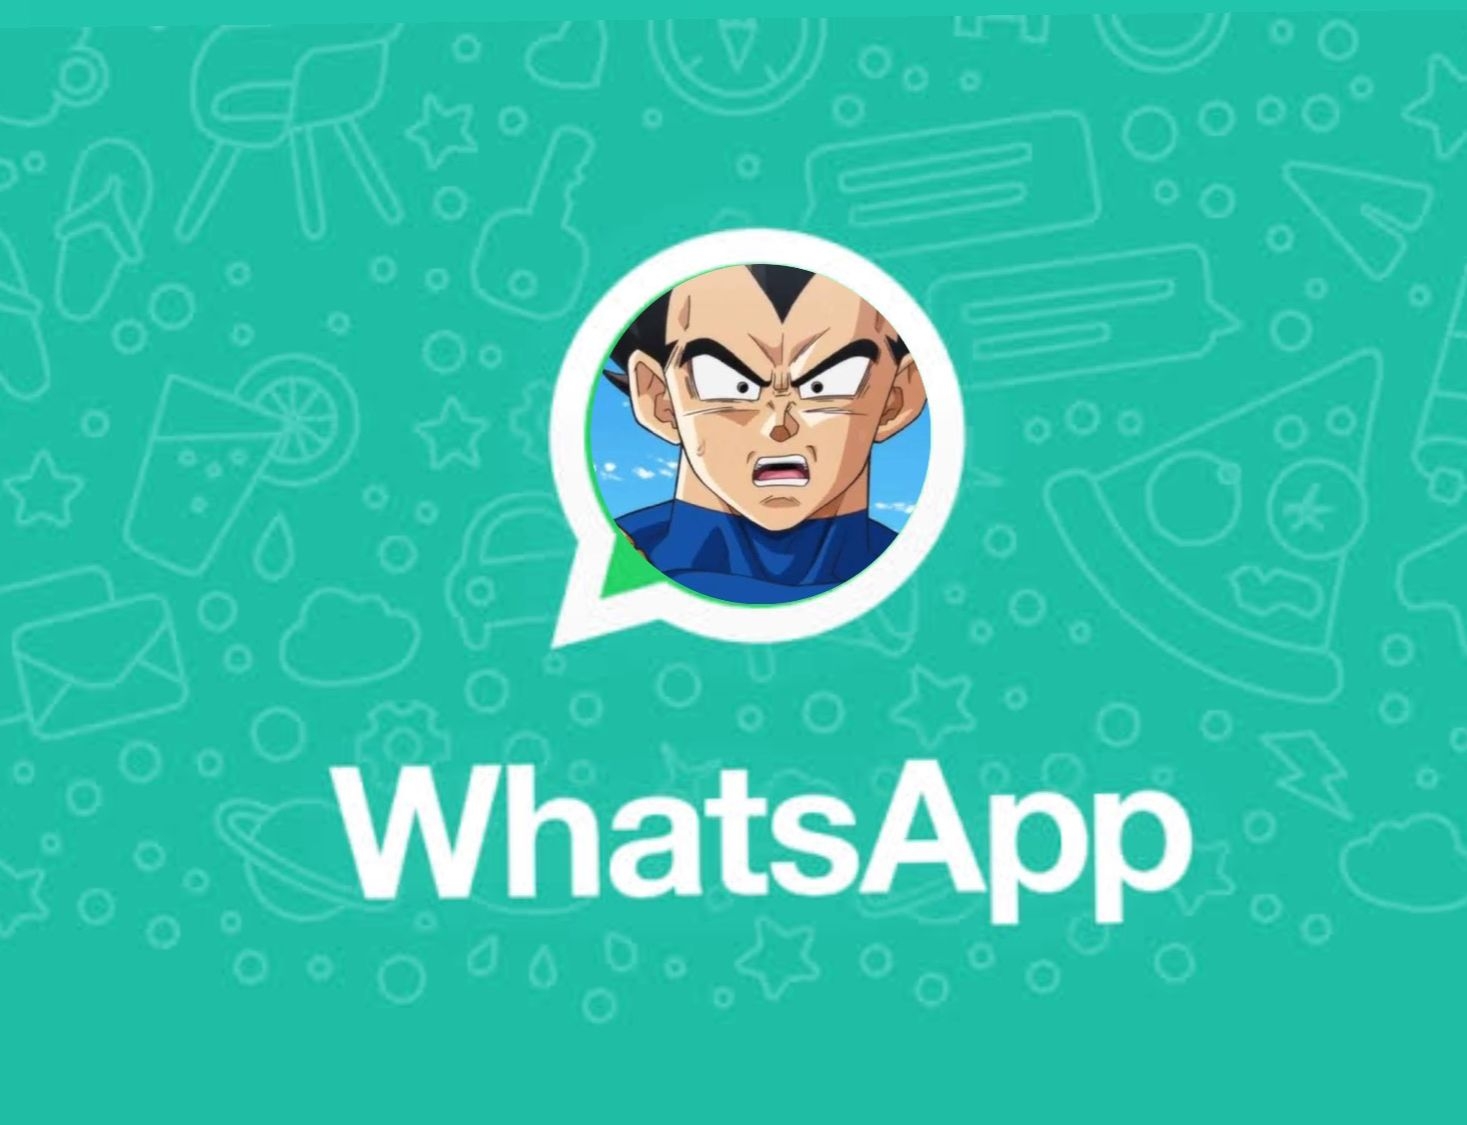 ¿Sabías que puedes mandar audios de WhatsApp con la voz de Vegueta? Así se deben hacer